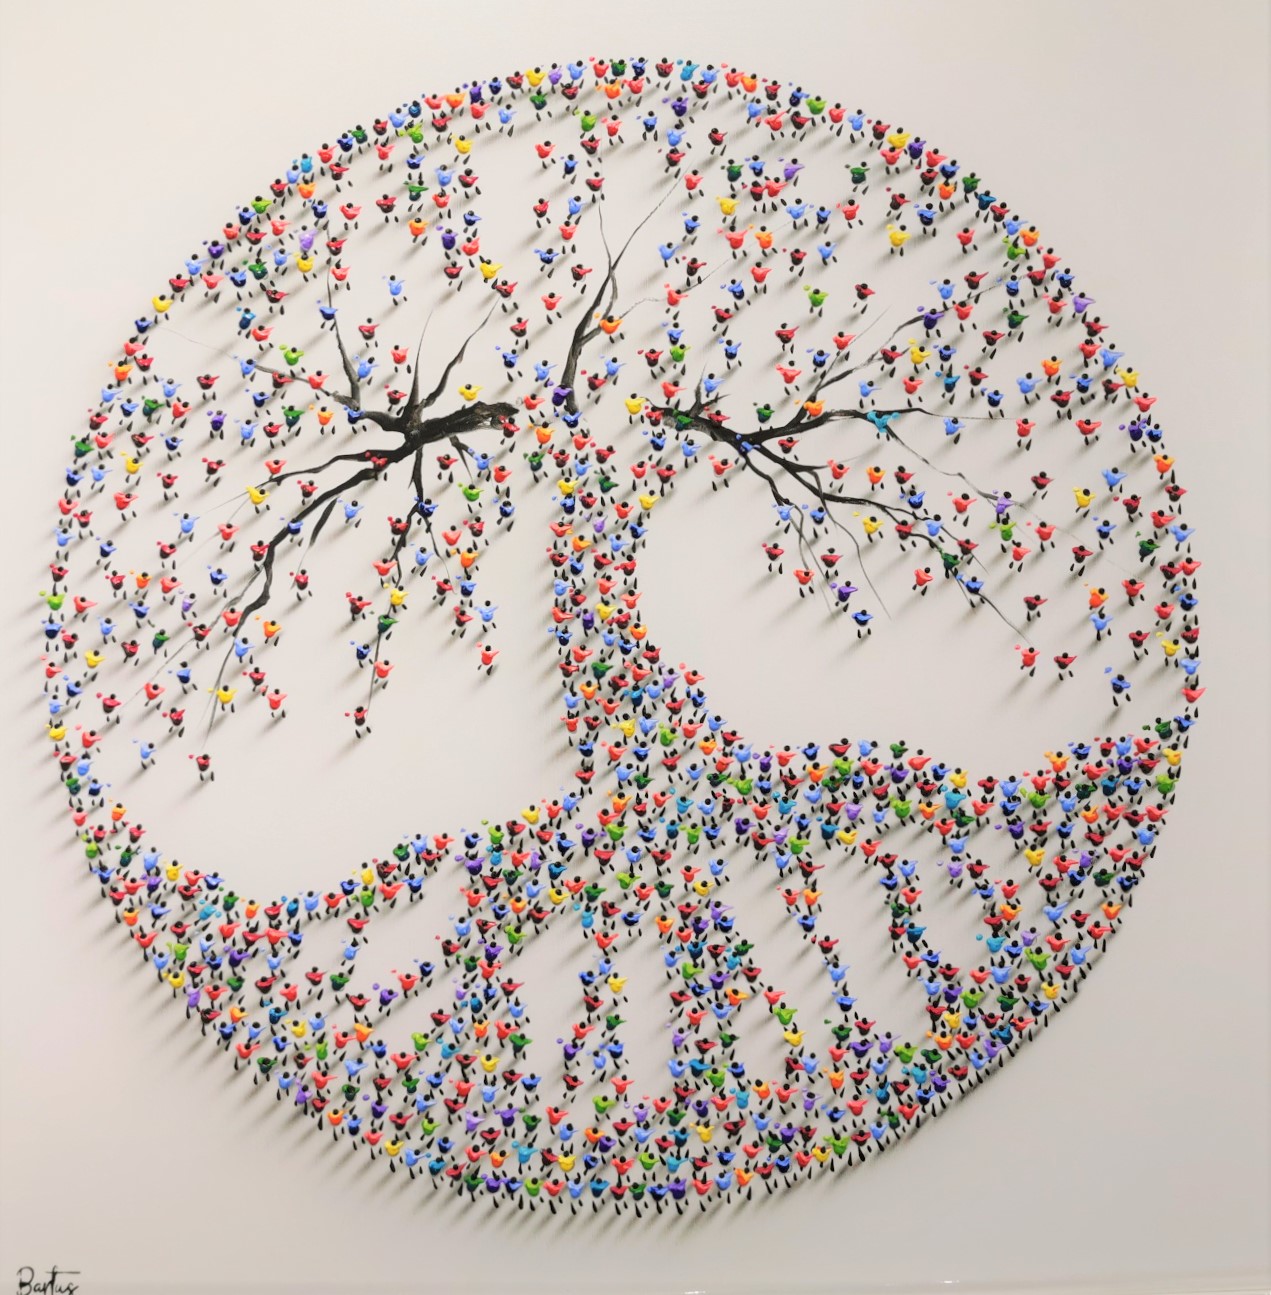 Francisco Bartus - Tree of Life V